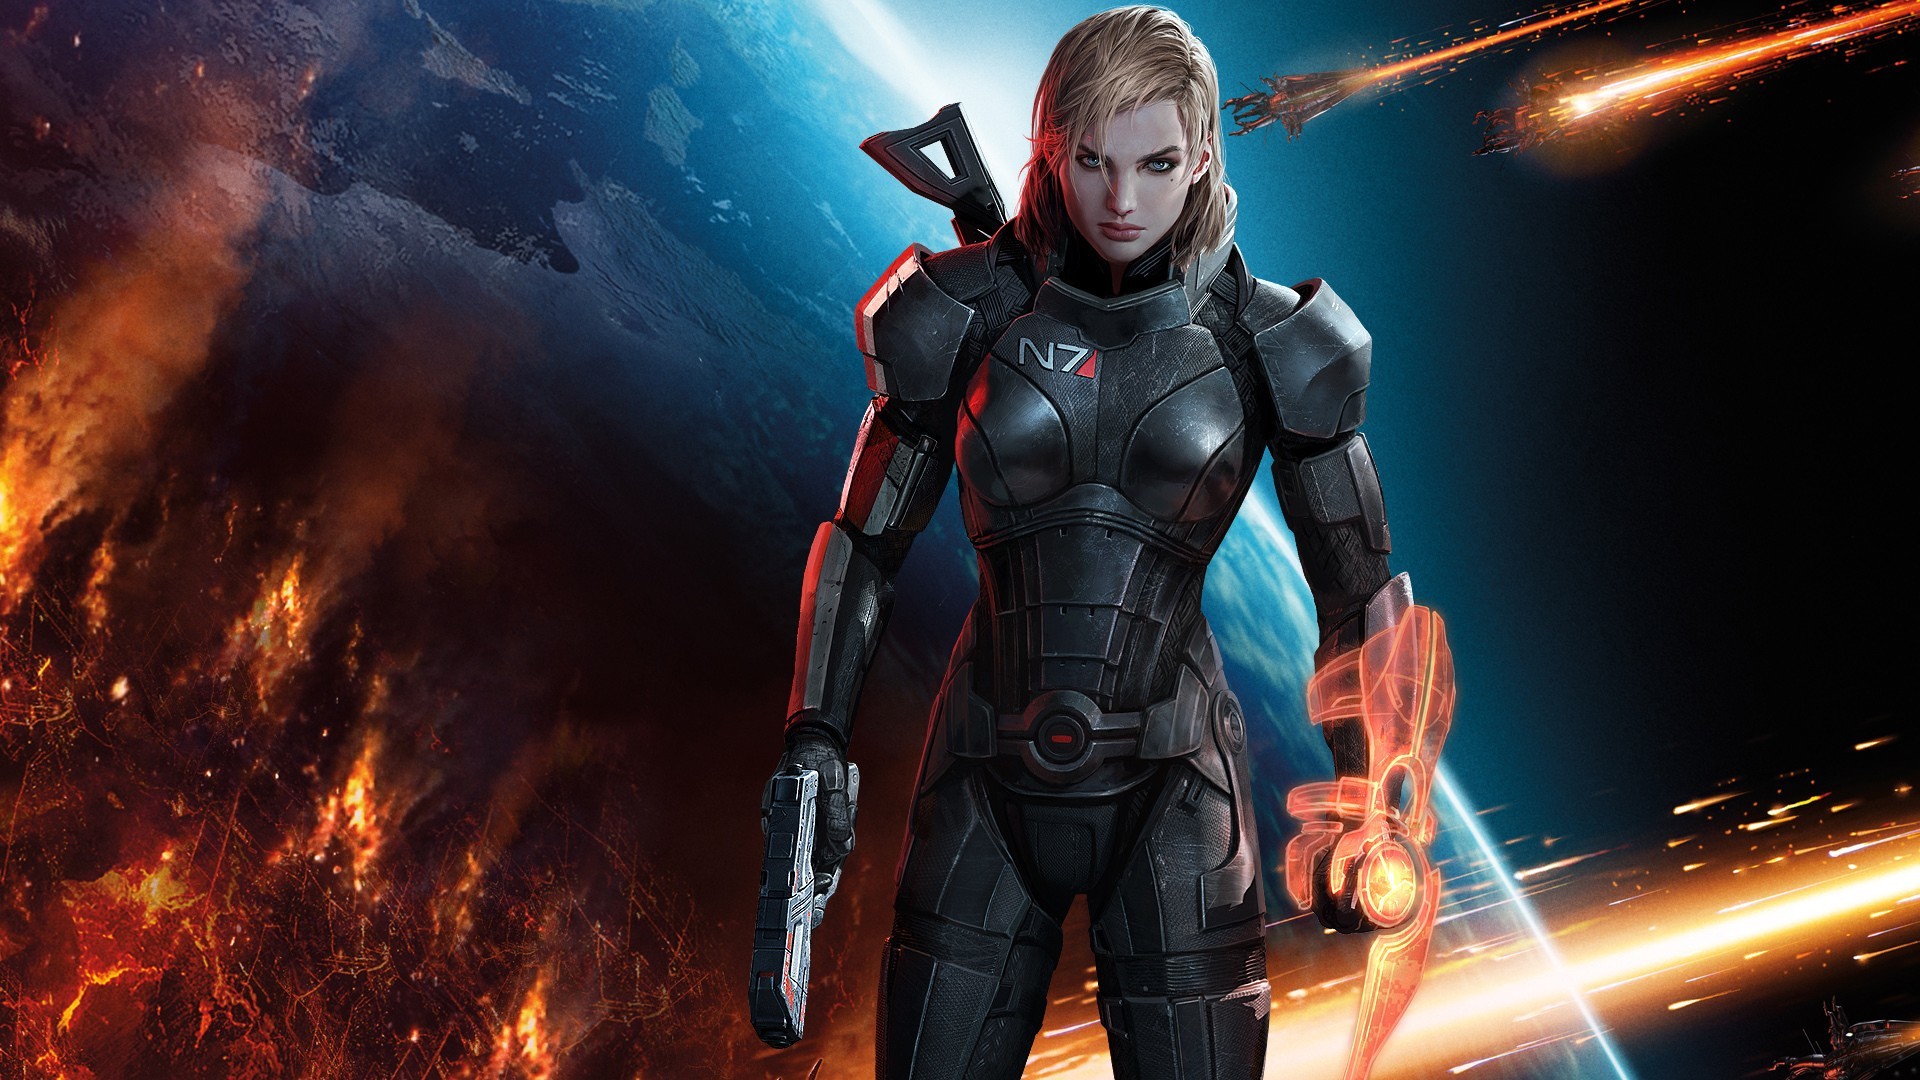 1920x1080 Commander Shepard in Mass Effect 3